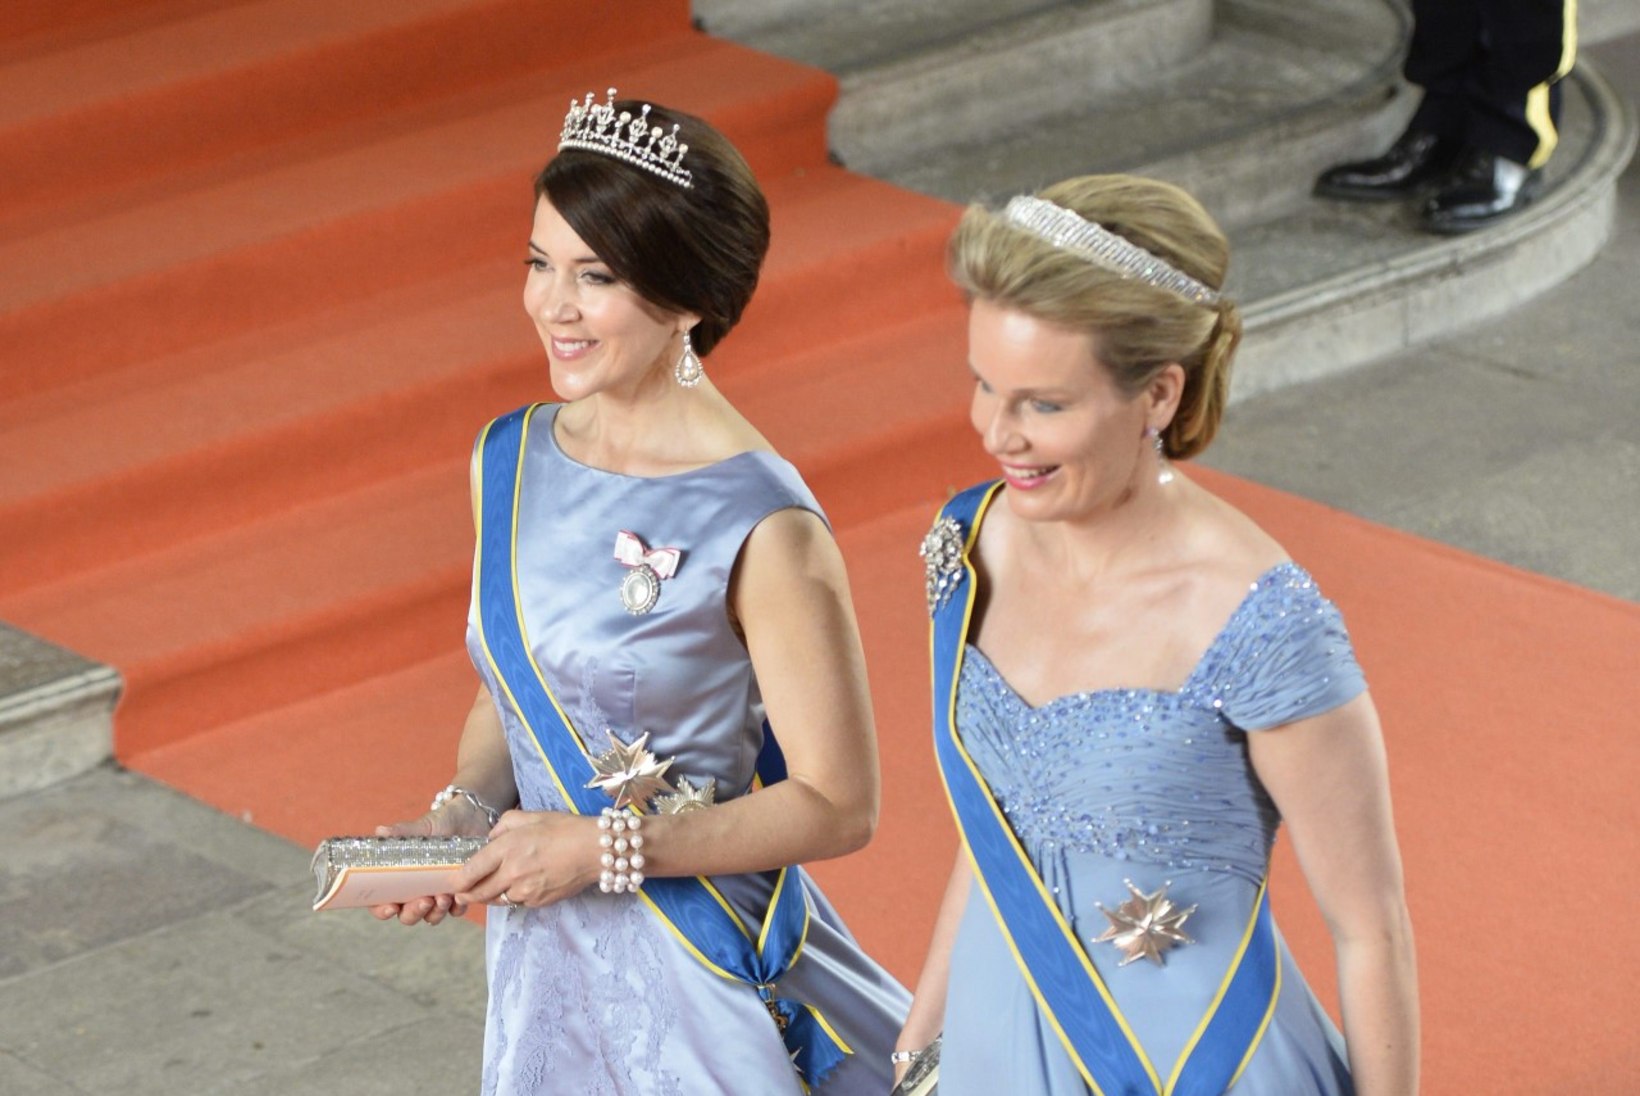 GALERII | PALJU ÕNNE KUNINGLIKULE NOORPAARILE! Rootsi prints Carl Philip abiellus Sofia Hellqvistiga  